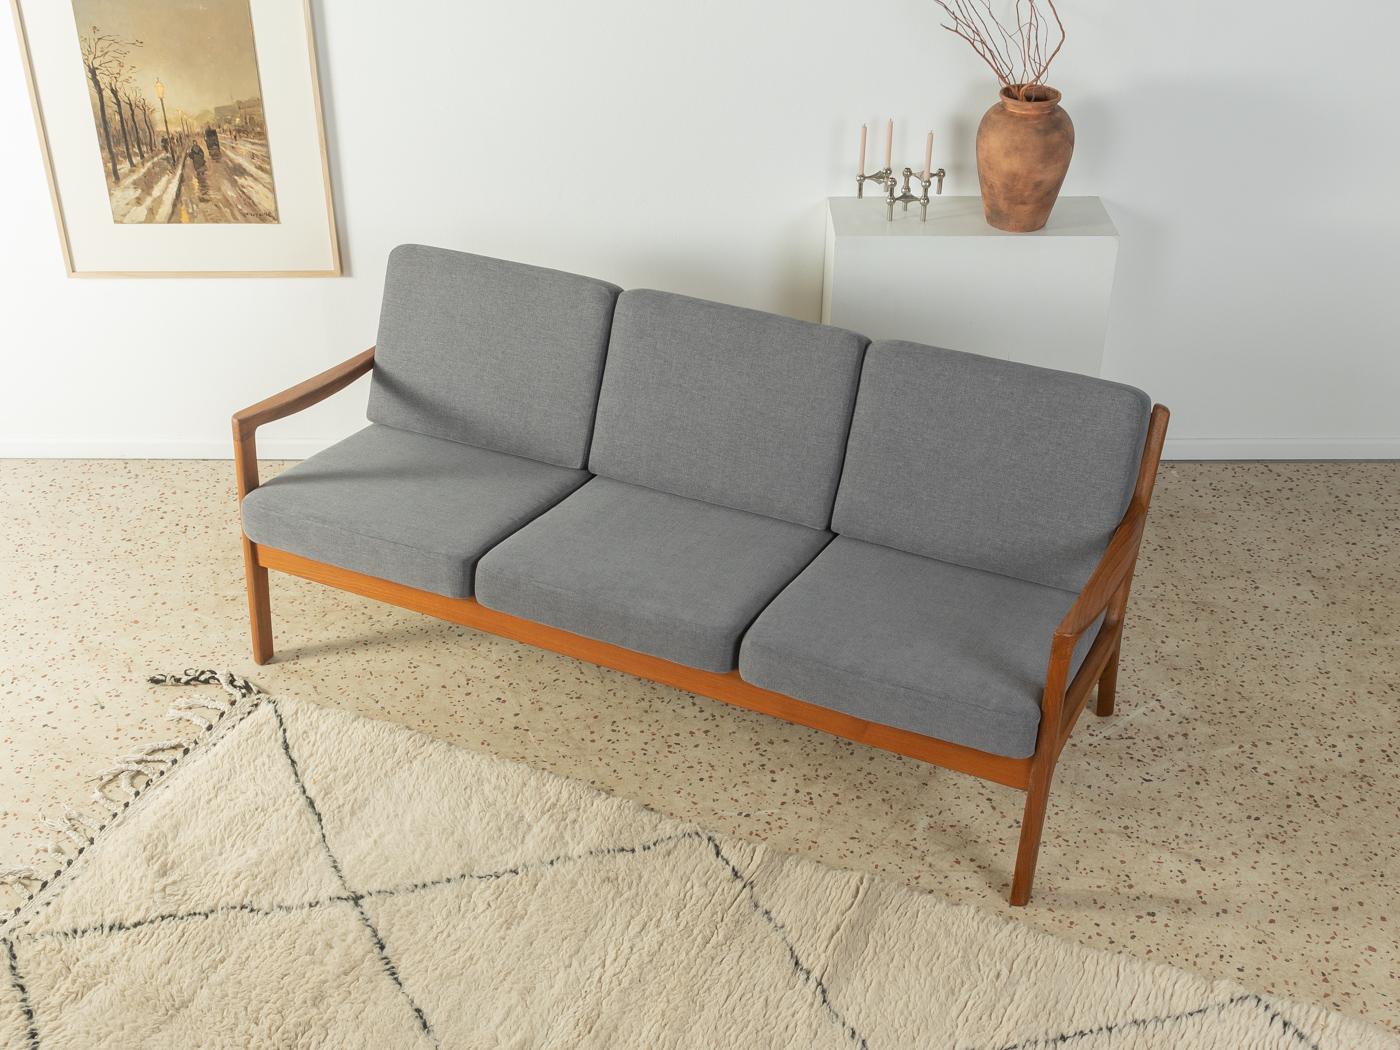 Klassisches 3-Sitzer-Sofa aus den 1960er Jahren. Modell Senator von Ole Wanscher für CADO. Hochwertiger Rahmen aus massivem Teakholz. Das Sofa wurde neu gepolstert und mit einem hochwertigen grauen Polsterstoff bezogen.

Qualitätsmerkmale:
   